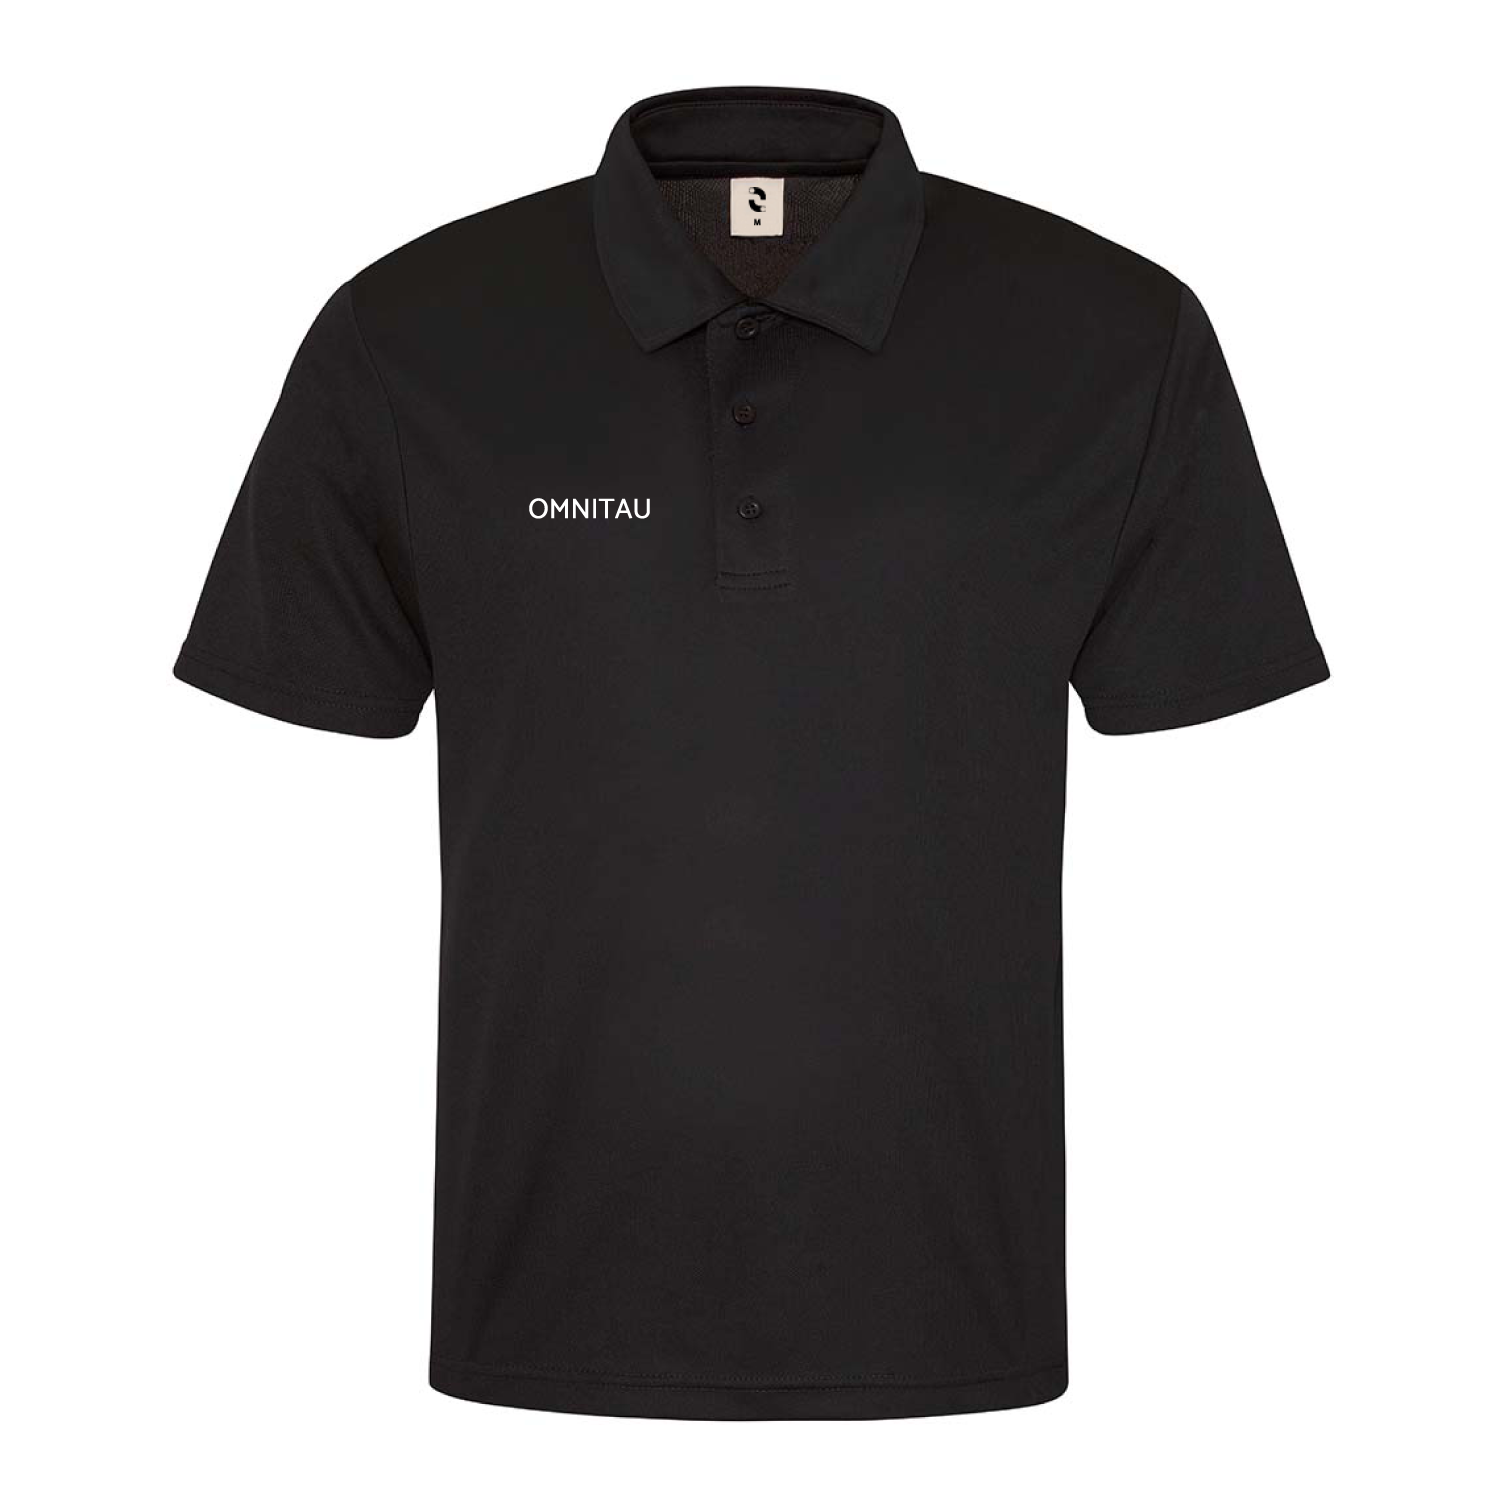 Omnitau Men's Team Sports Core Hockey Polo Shirt - Black